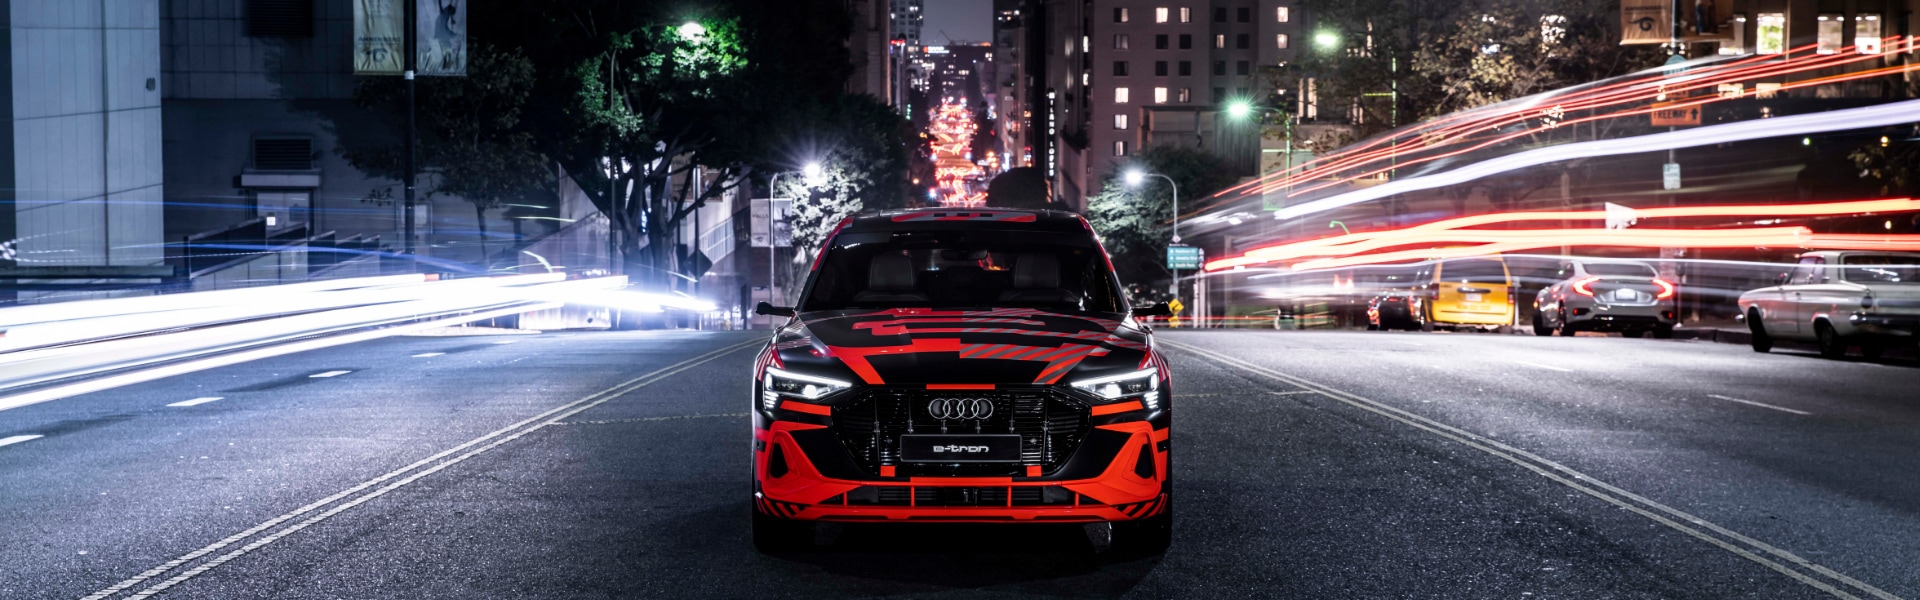 Rdeče vozilo Audi e-tron na cesti v mestu ponoči. Slikano od spredaj